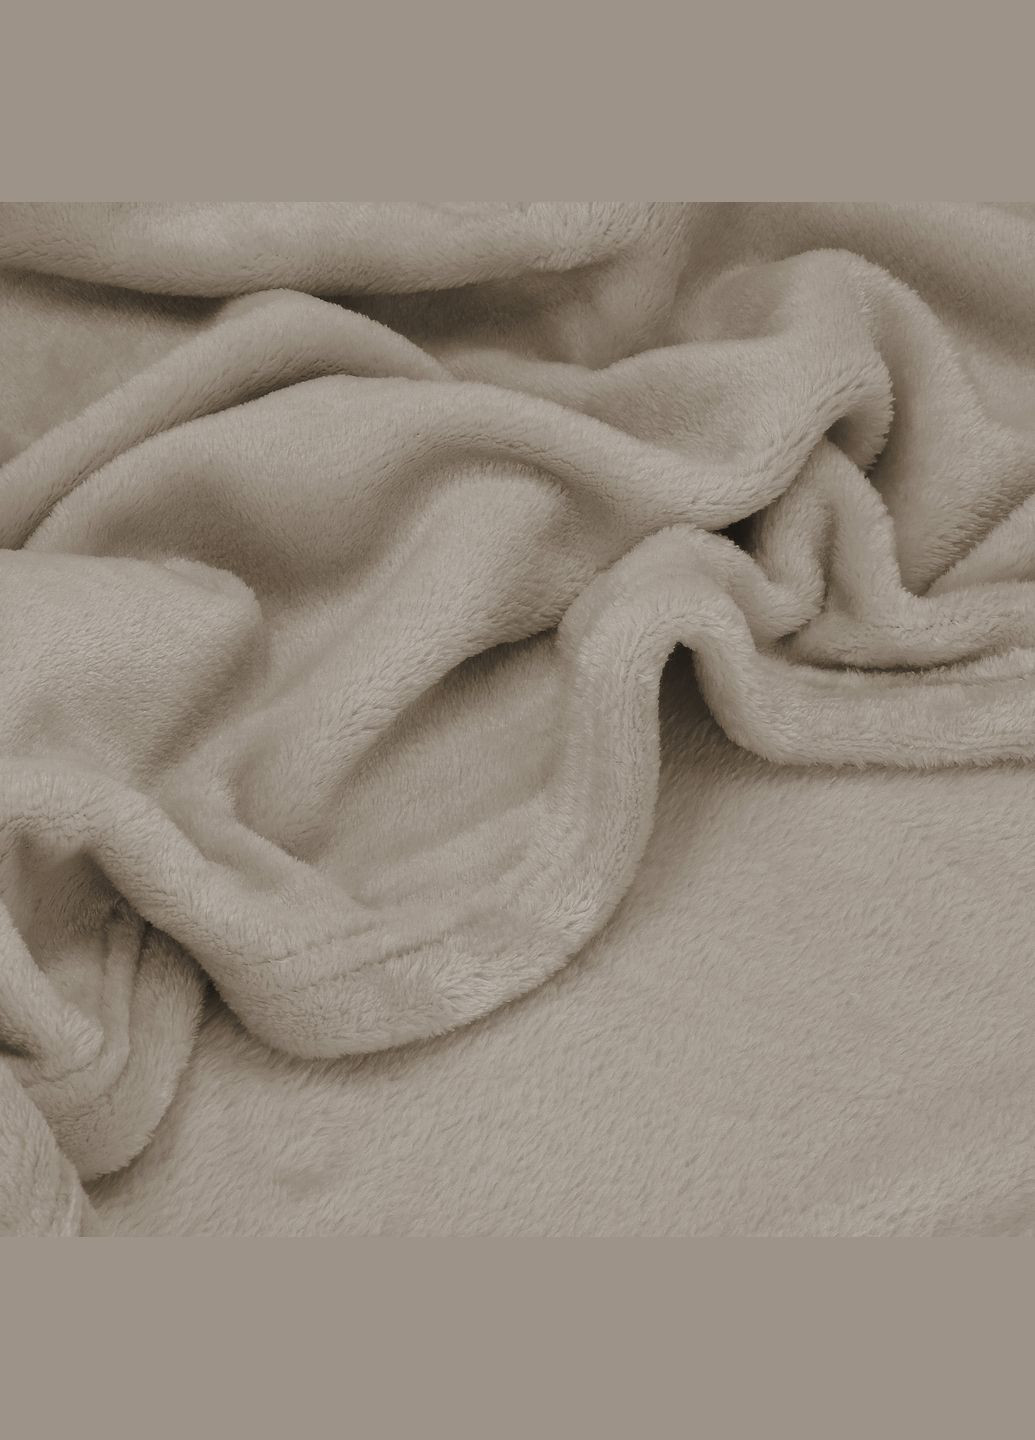 Пледпокрывало Luxurious Blanket 150 x 200 см Springos ha7204 (275096143)